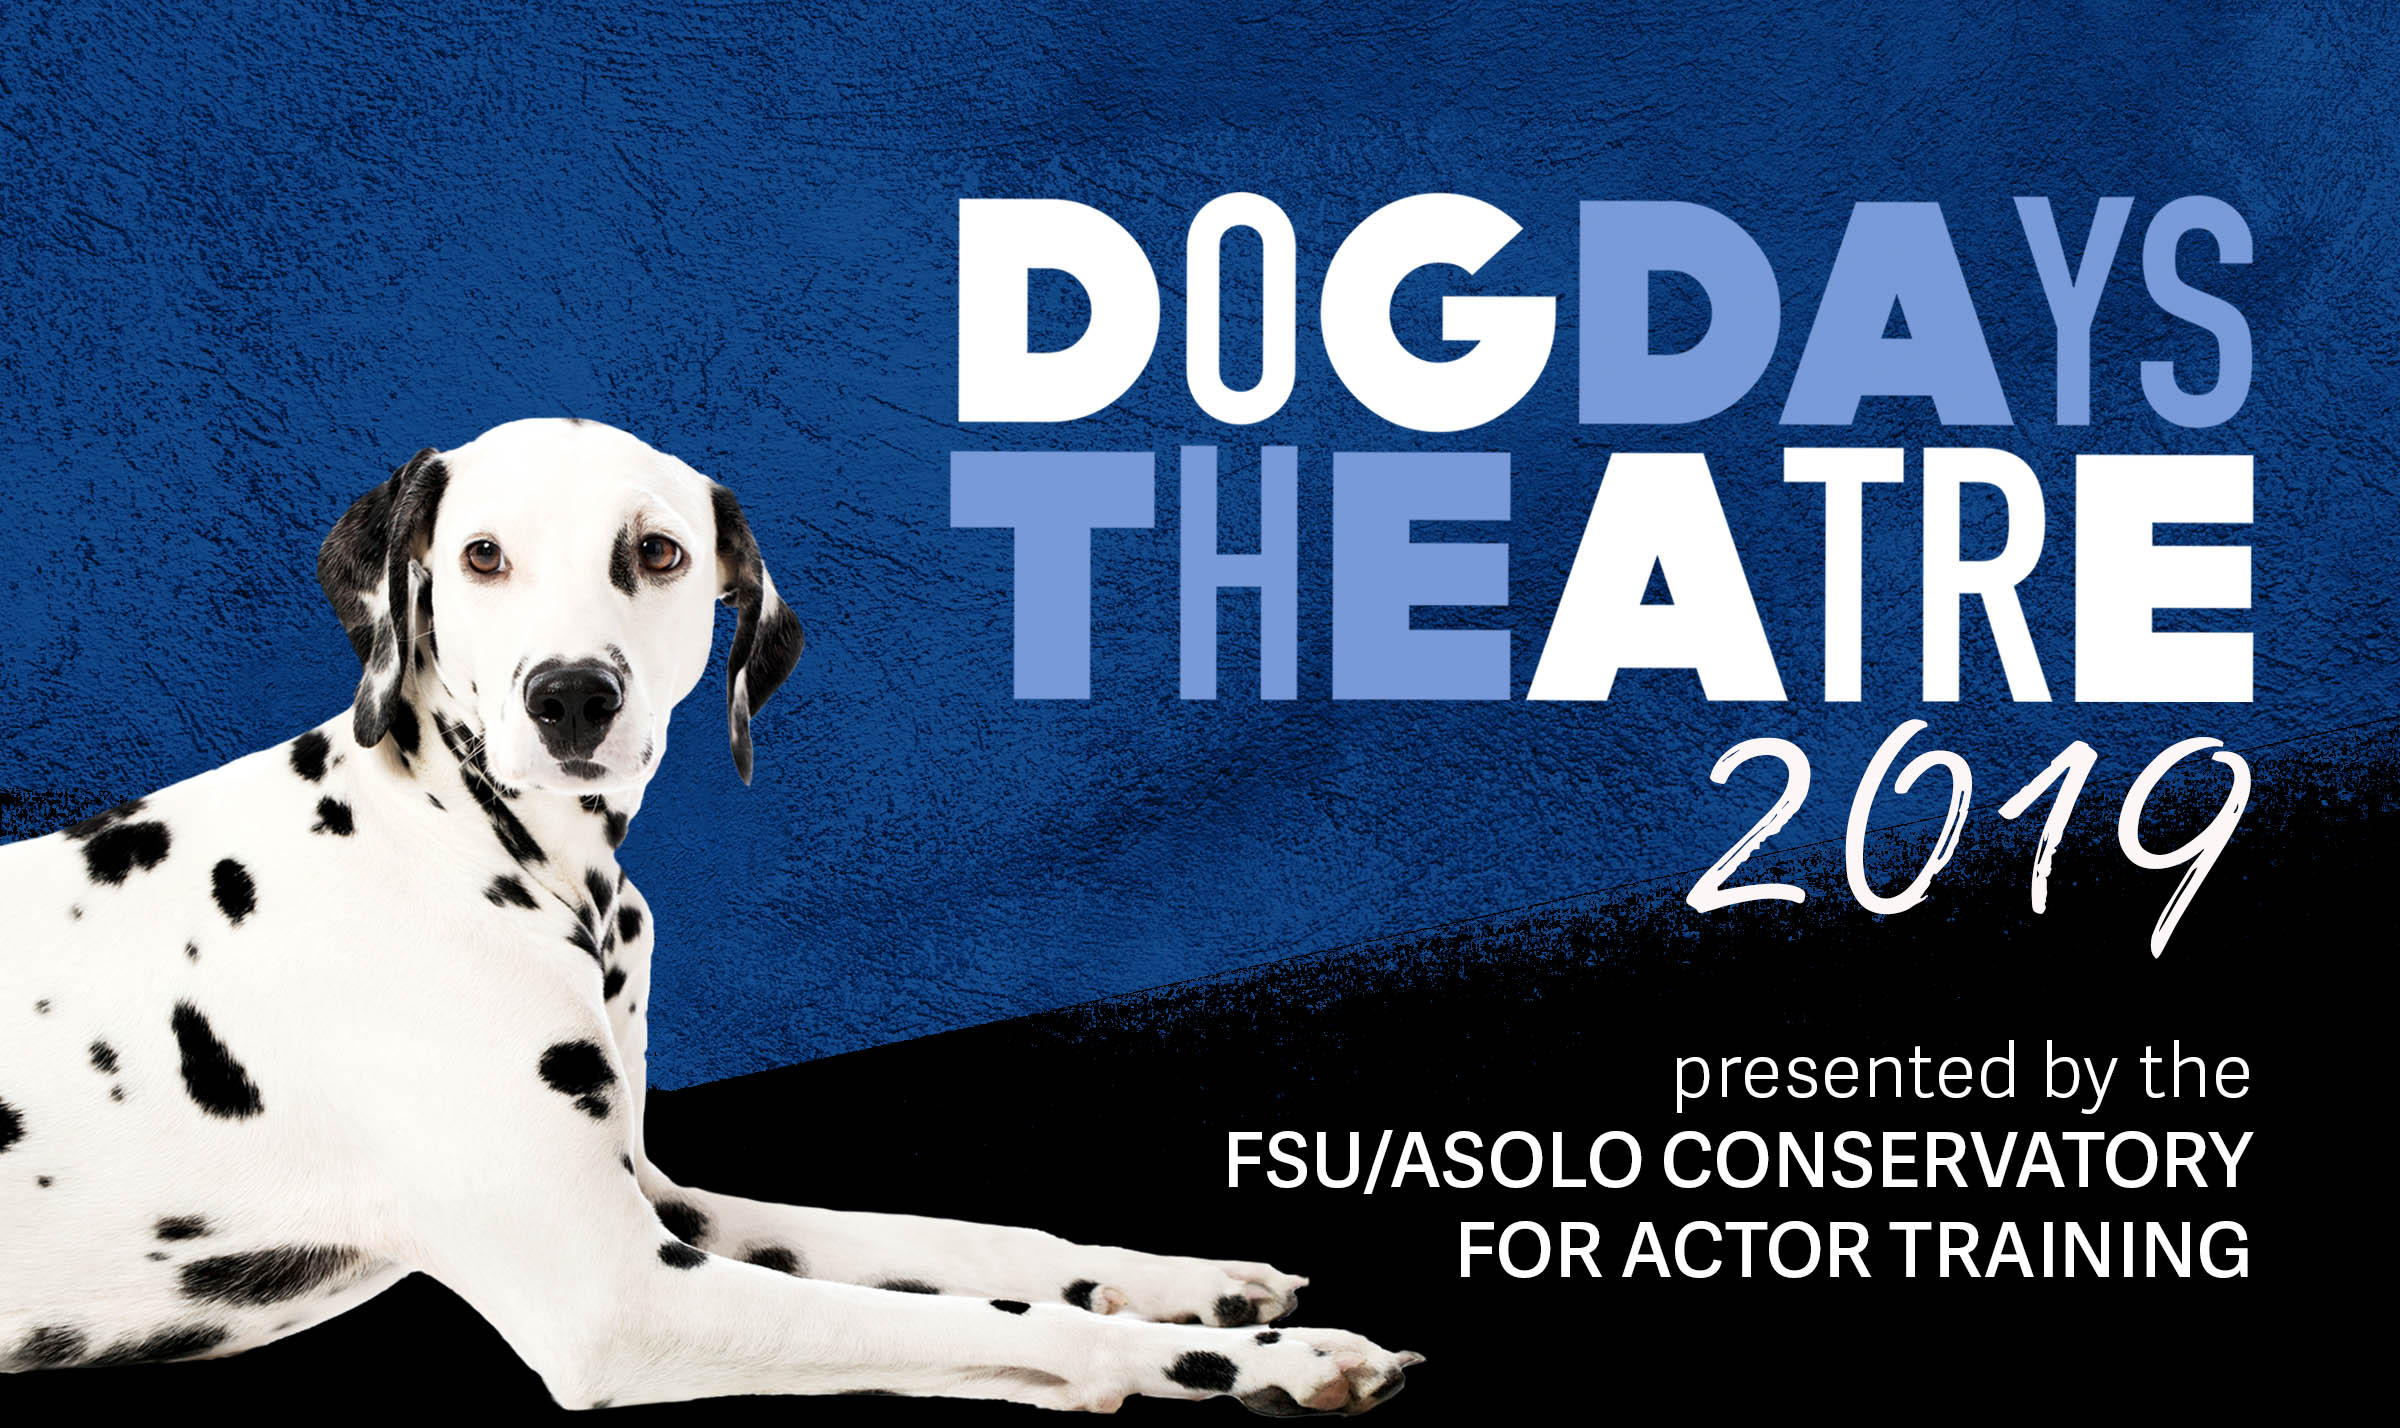 Dog Days Theatre 2019 Flyer